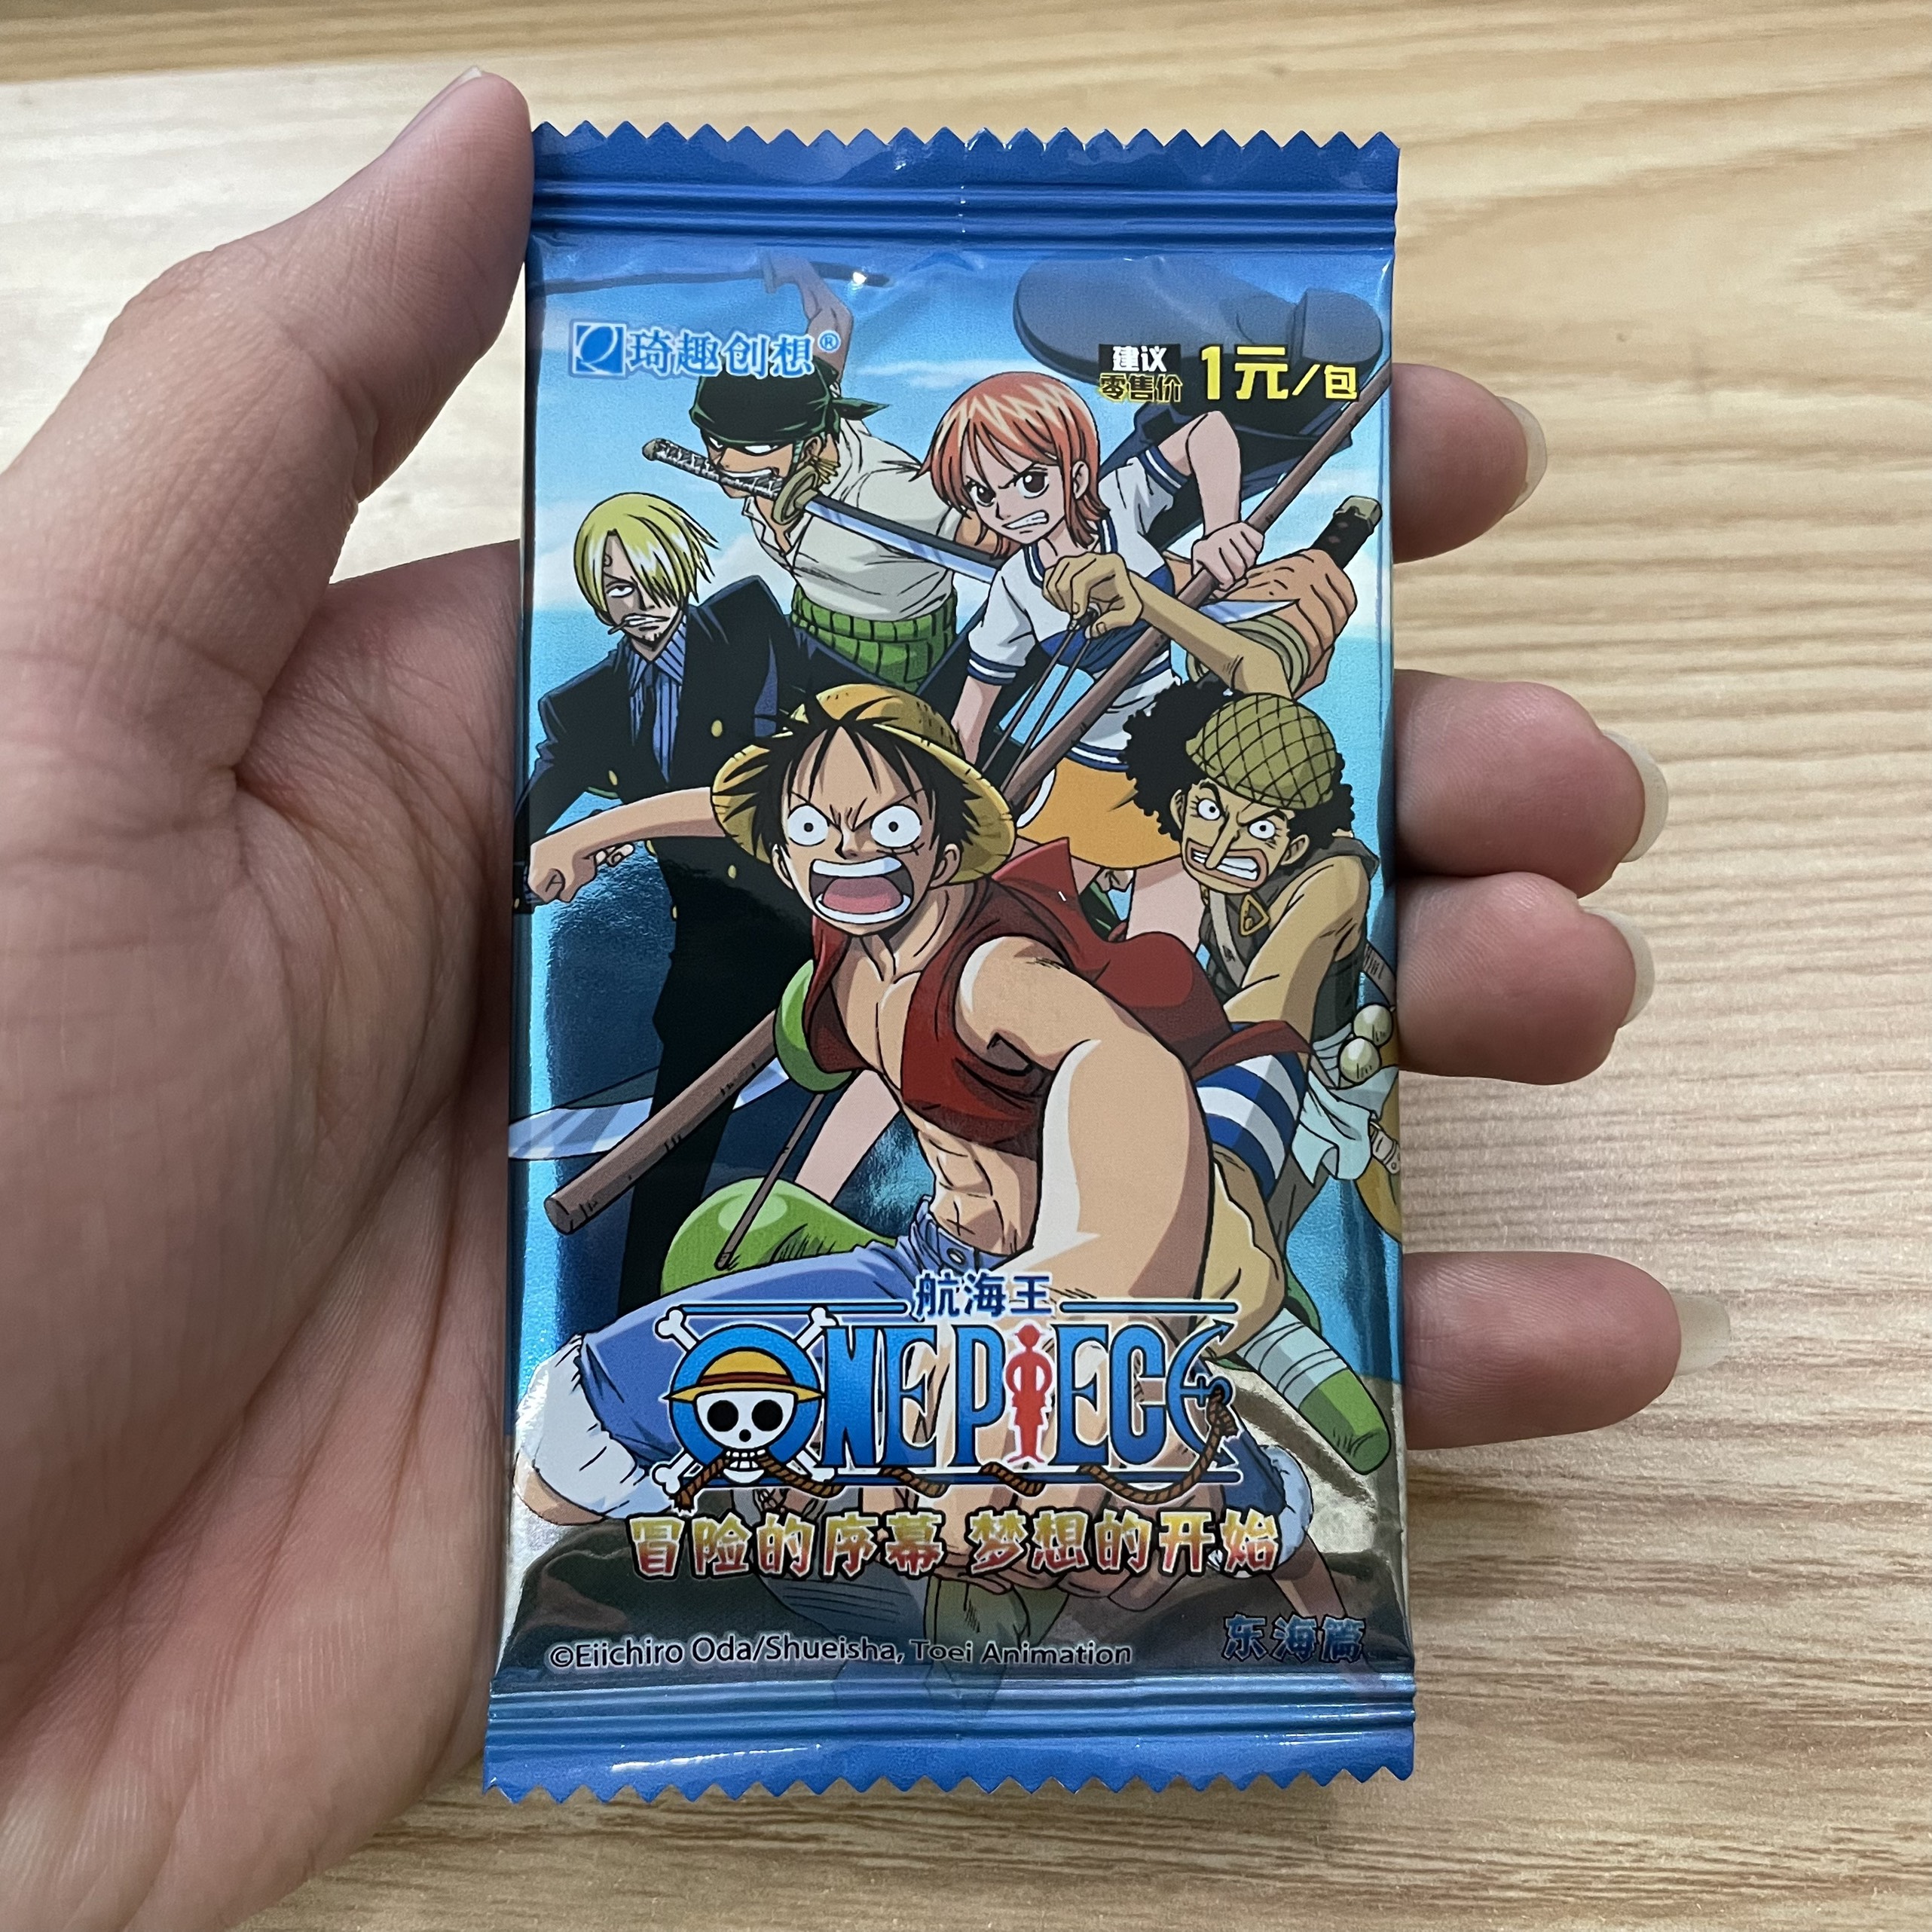 100+ Hình Ảnh One Piece Đẹp, Chất Lượng 3D, Full HD, 4K